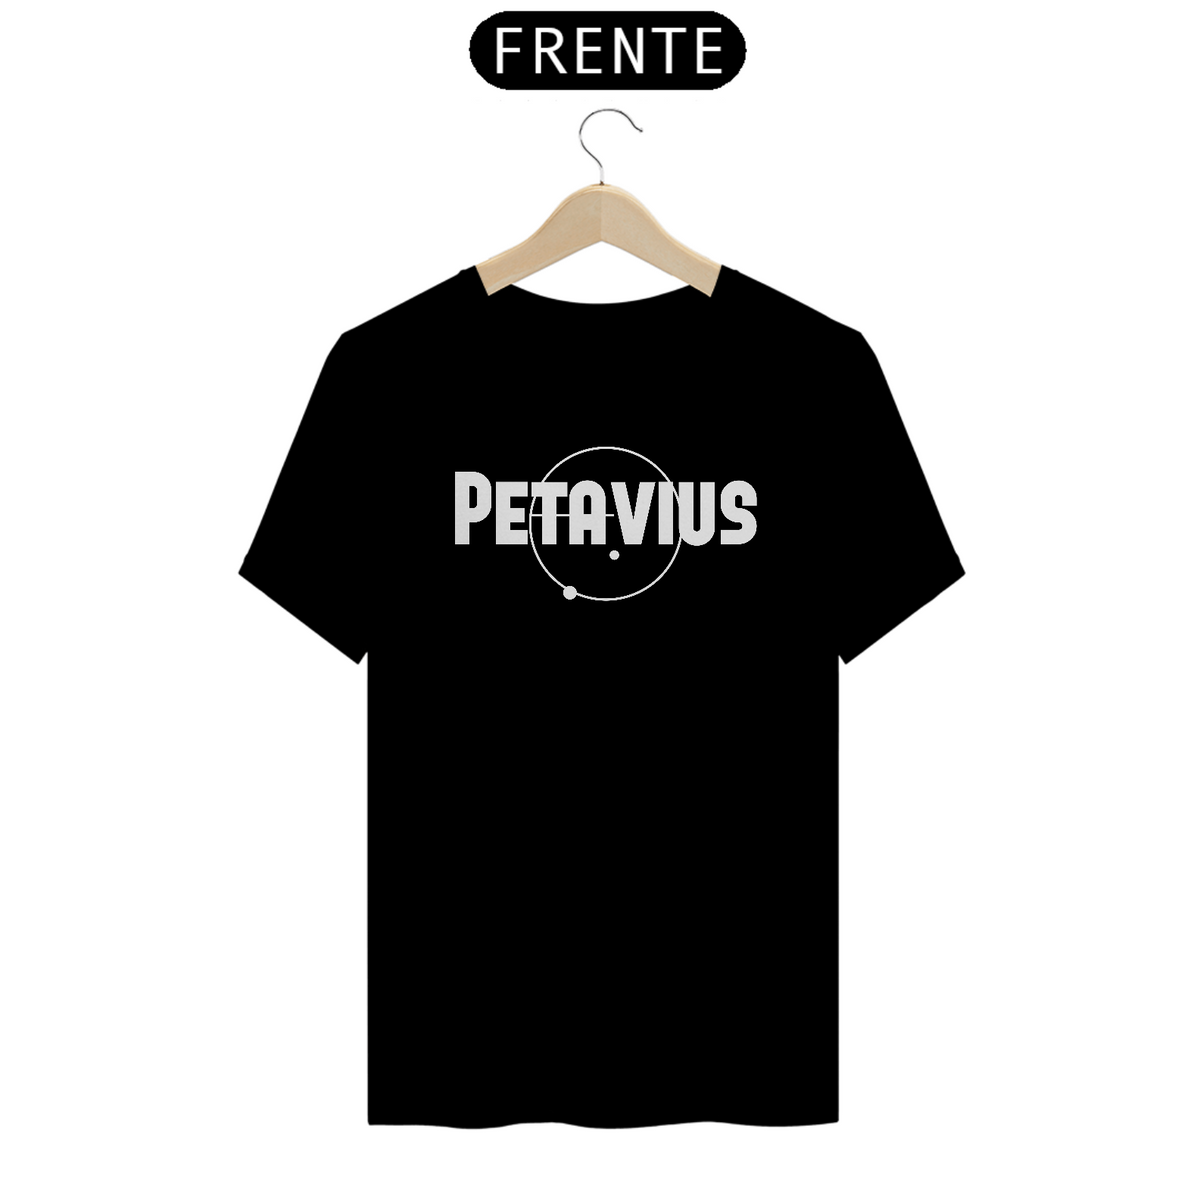 Nome do produto: Petavius